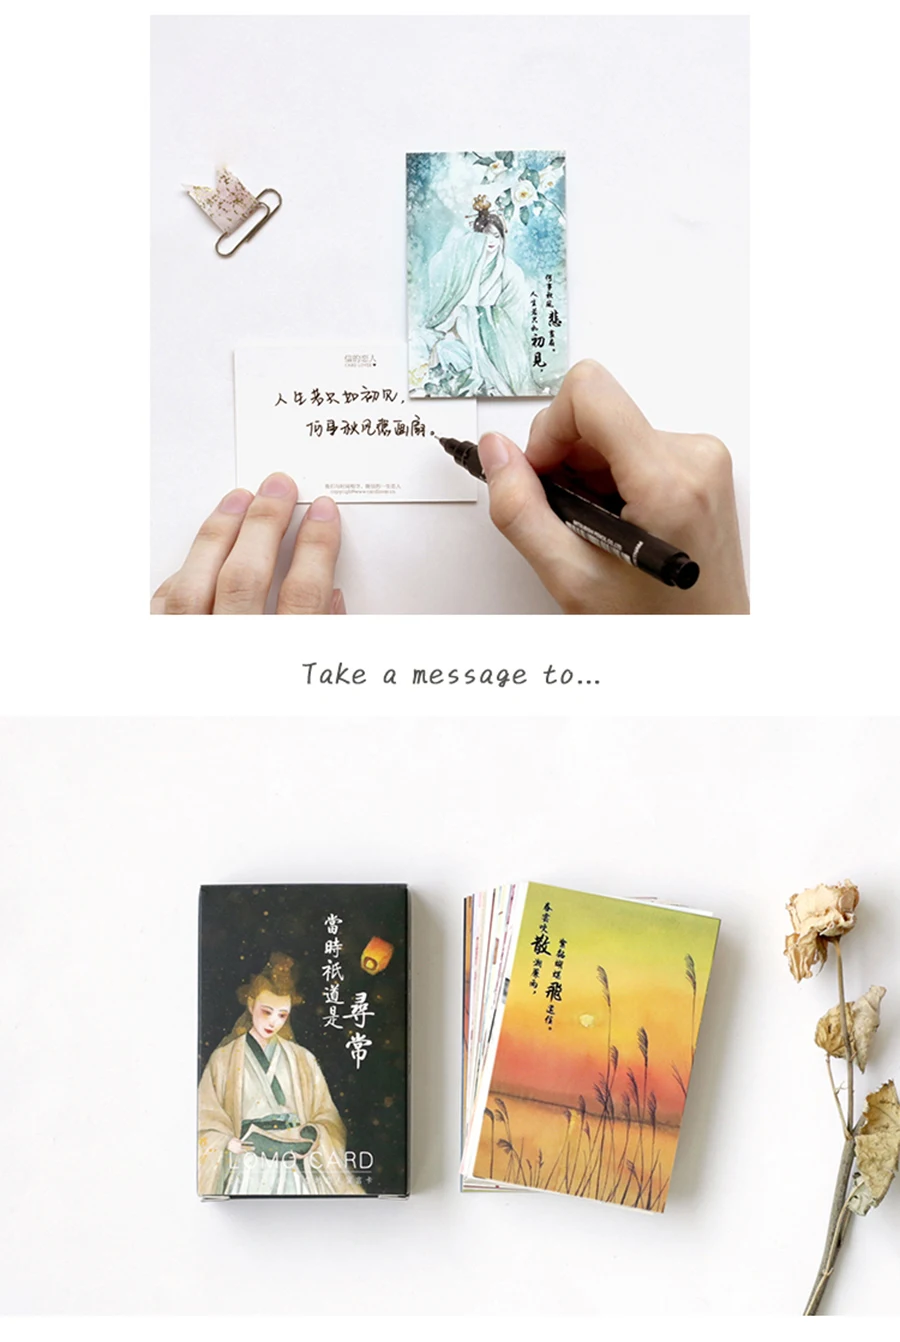 28 шт./лот, креативная Милая Ретро открытка с персонажем, открытка на день рождения, поздравительная открытка, конверт, подарочный набор, открытка с надписью